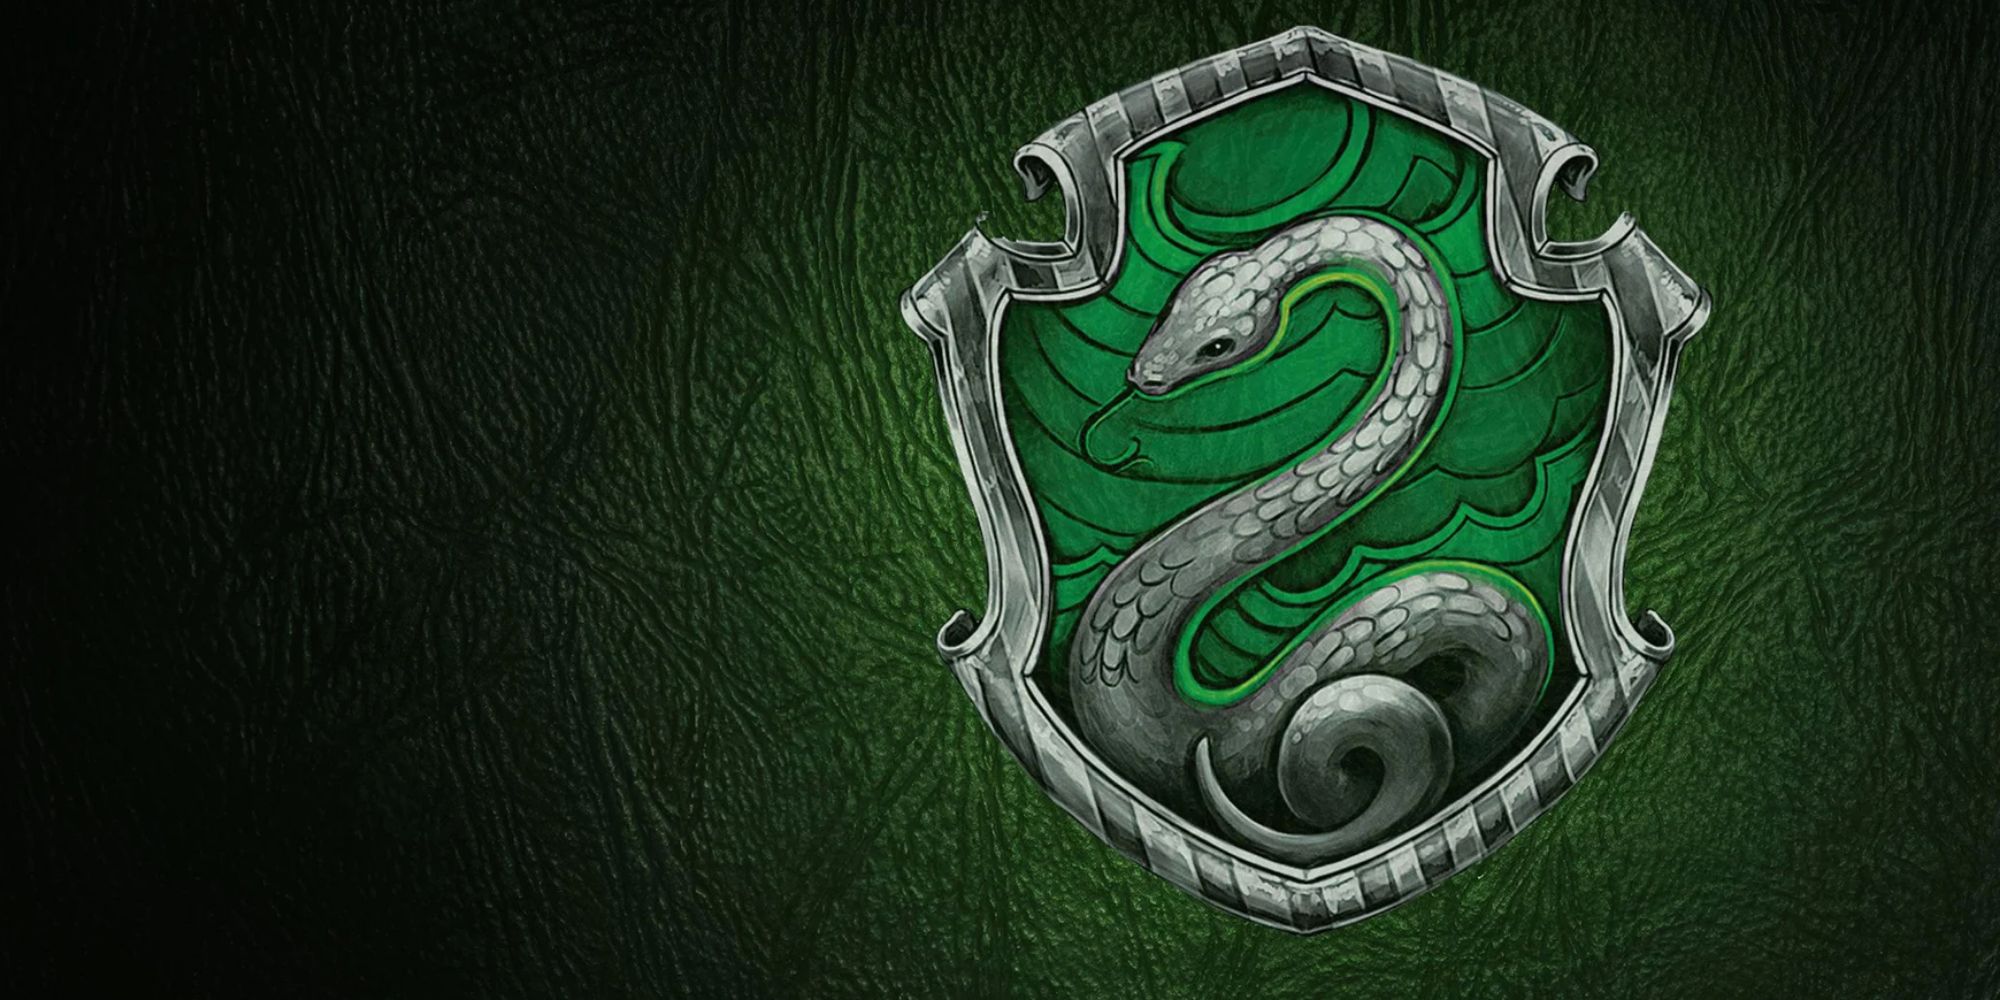 A Hogwarts Slytherin emblem